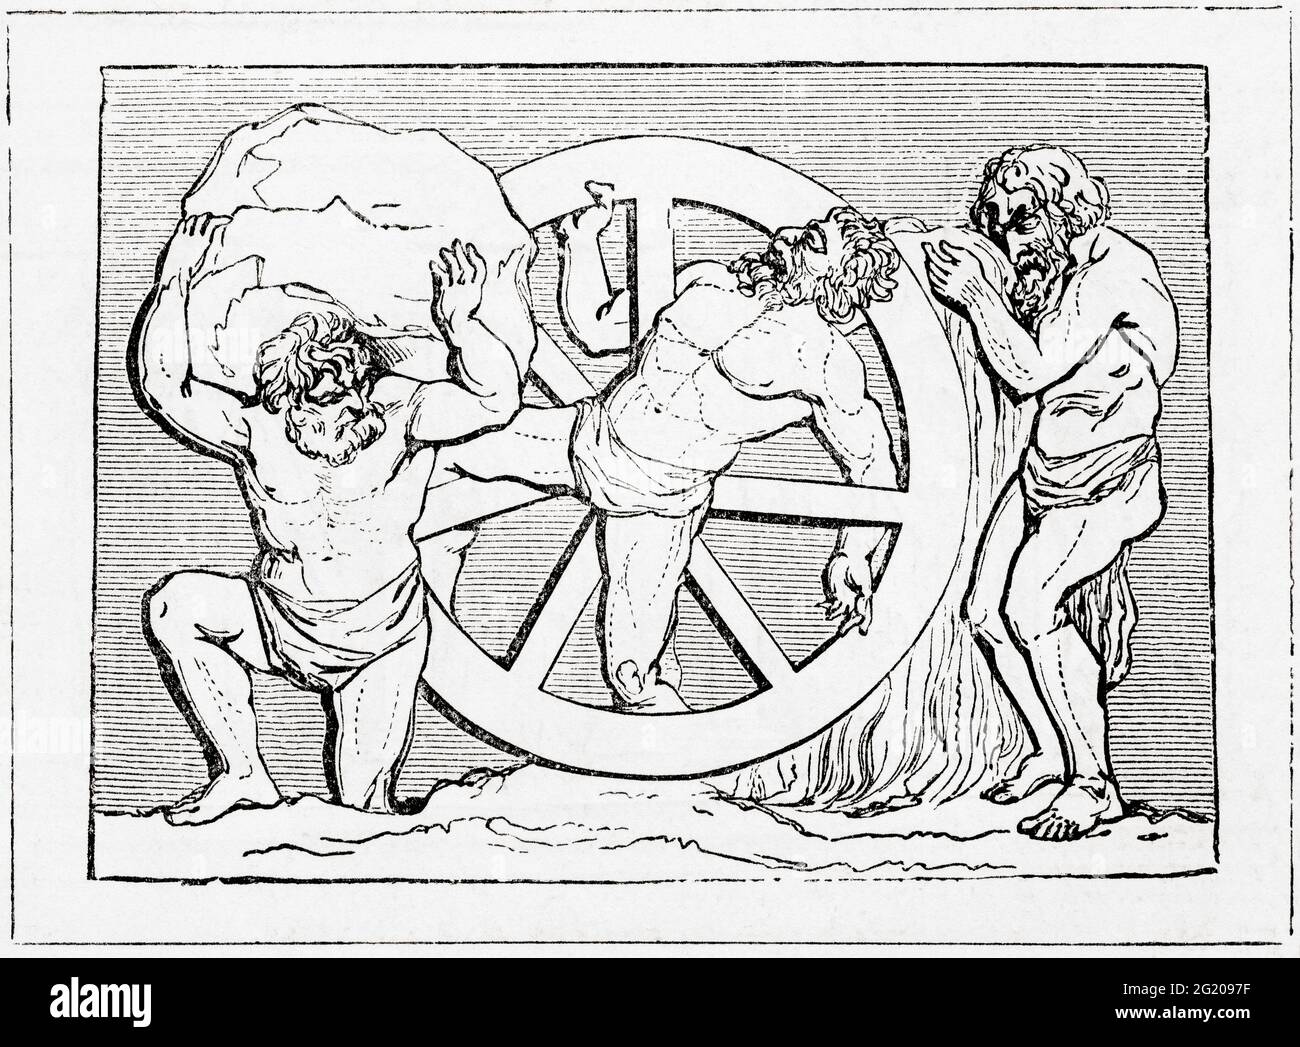 Sisyphus, Ixion et Tantalus. Sisyphus ou Sisyphos, fondateur et roi d'Ephyra, puni pour avoir triché la mort deux fois en étant fait pour rouler un énorme rocher sur une colline seulement pour qu'il redescend chaque fois qu'il a atteint le sommet, en répétant cette action pour l'éternité. Ixion, roi des Lapiths, était relié à une roue à ailes qui tournait toujours. Tantalus, alias Atys, figure mythologique grecque faite pour se tenir dans un bassin d'eau sous un arbre fruitier à branches basses, avec le fruit toujours éluant sa saisie, et l'eau toujours s'en tirant avant qu'il puisse prendre un verre. D'UNE histoire populaire de la Grèce, publier Banque D'Images